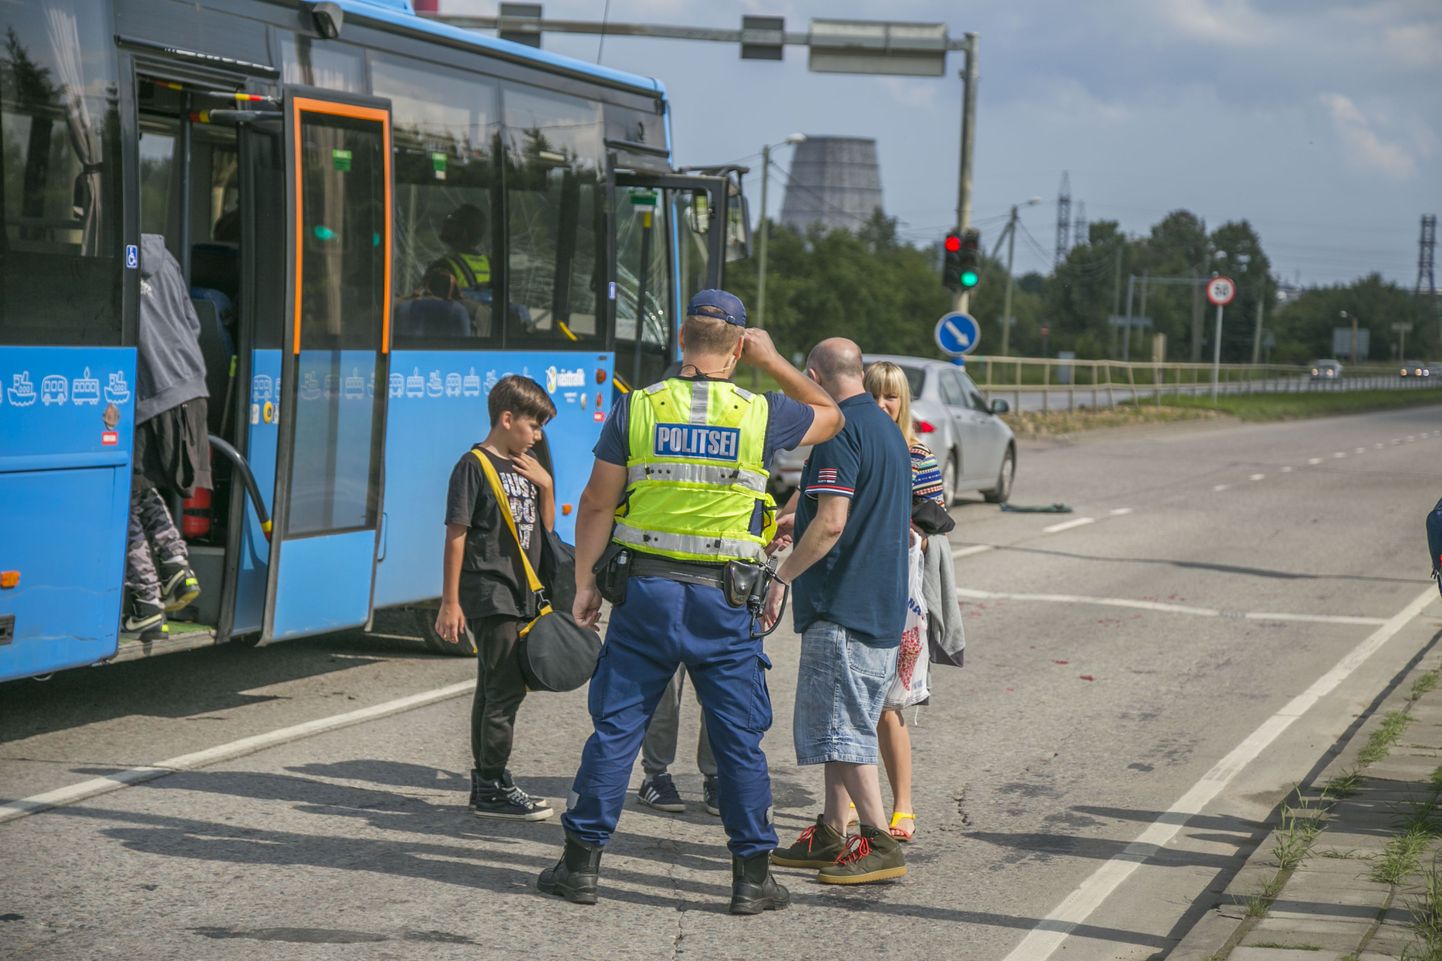 Tallinna piiril Perterburi teel sattus laupäeval liiklusõnnetusse lapsi täis buss, mille juht oli raskes joobes.